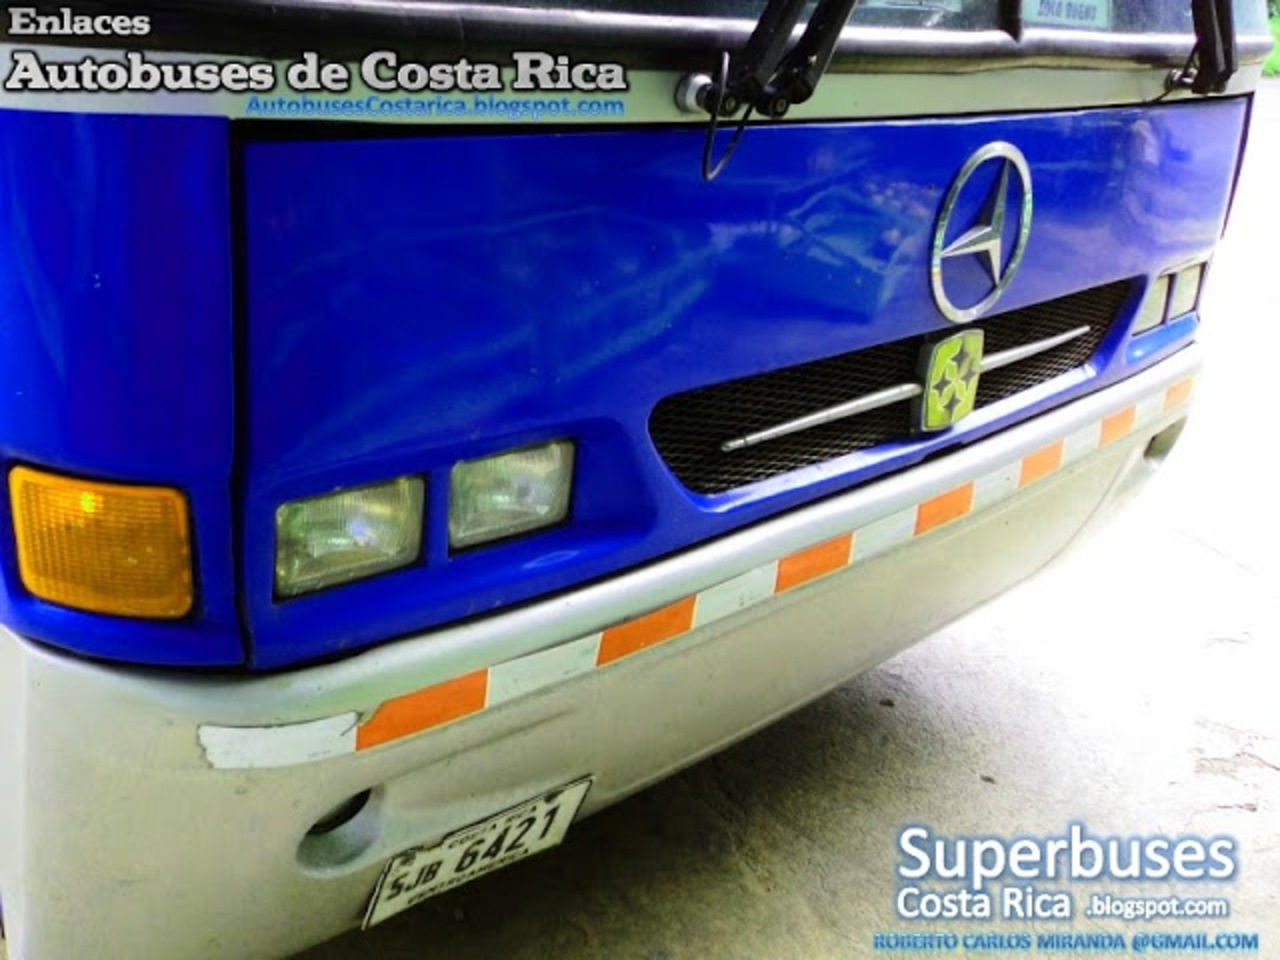 Enlaces Autobuses de Costa Rica: Mercedes Benz Busscar ElBuss340